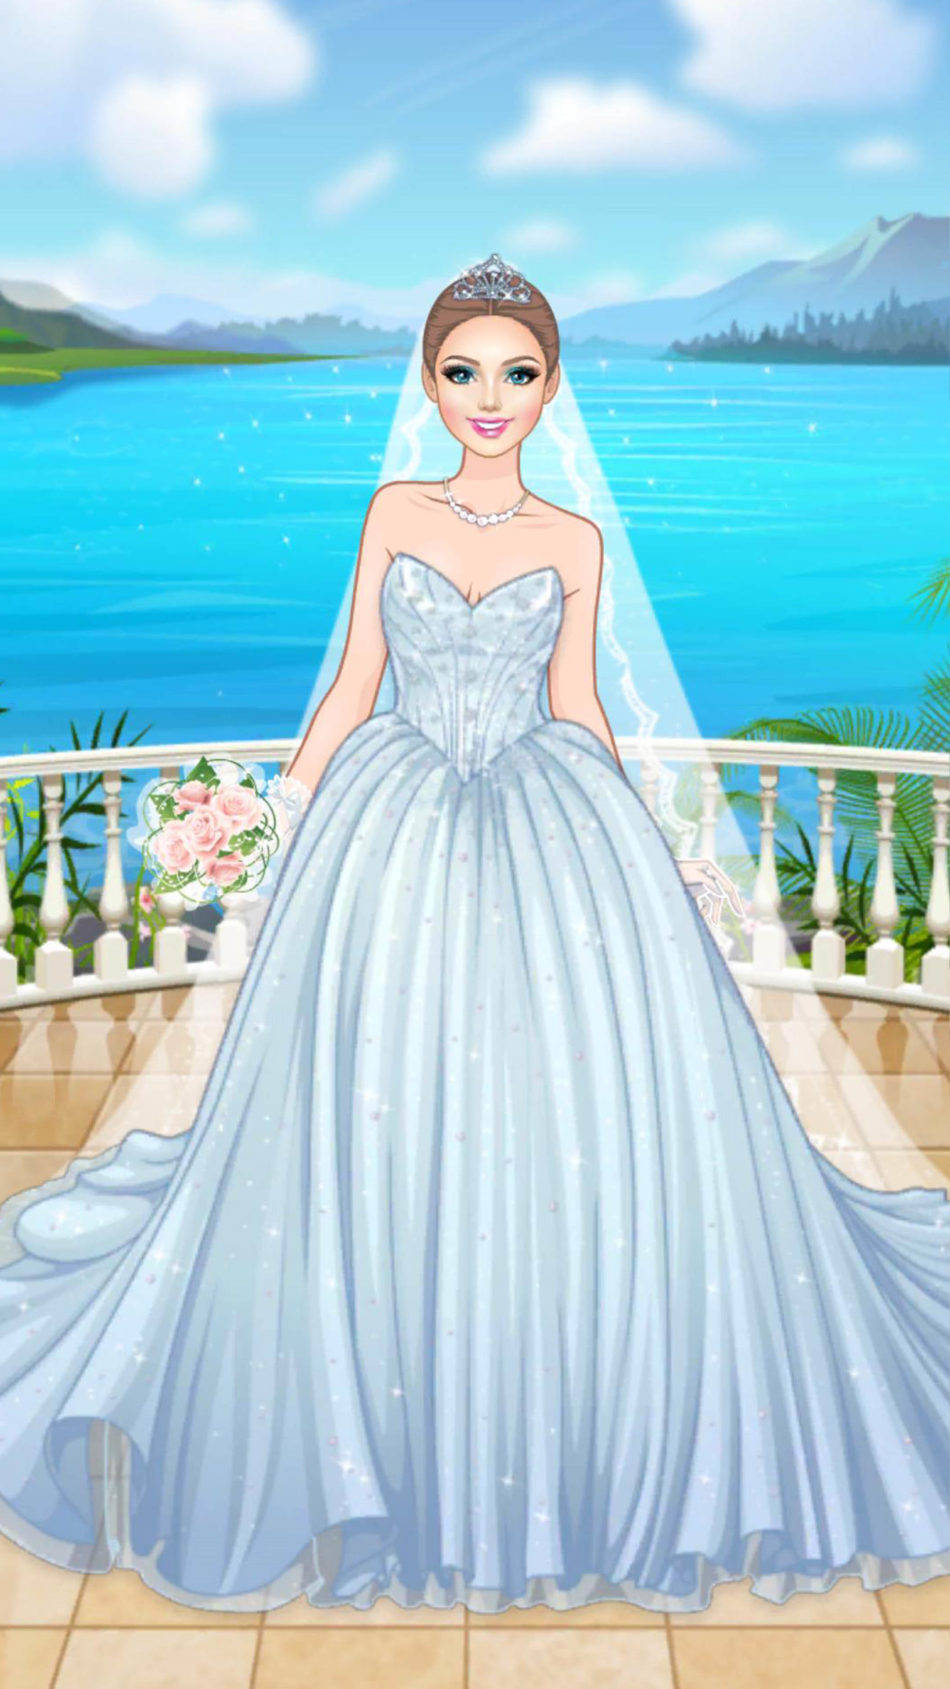 Barbie Blue Wedding Dress Wallpaper